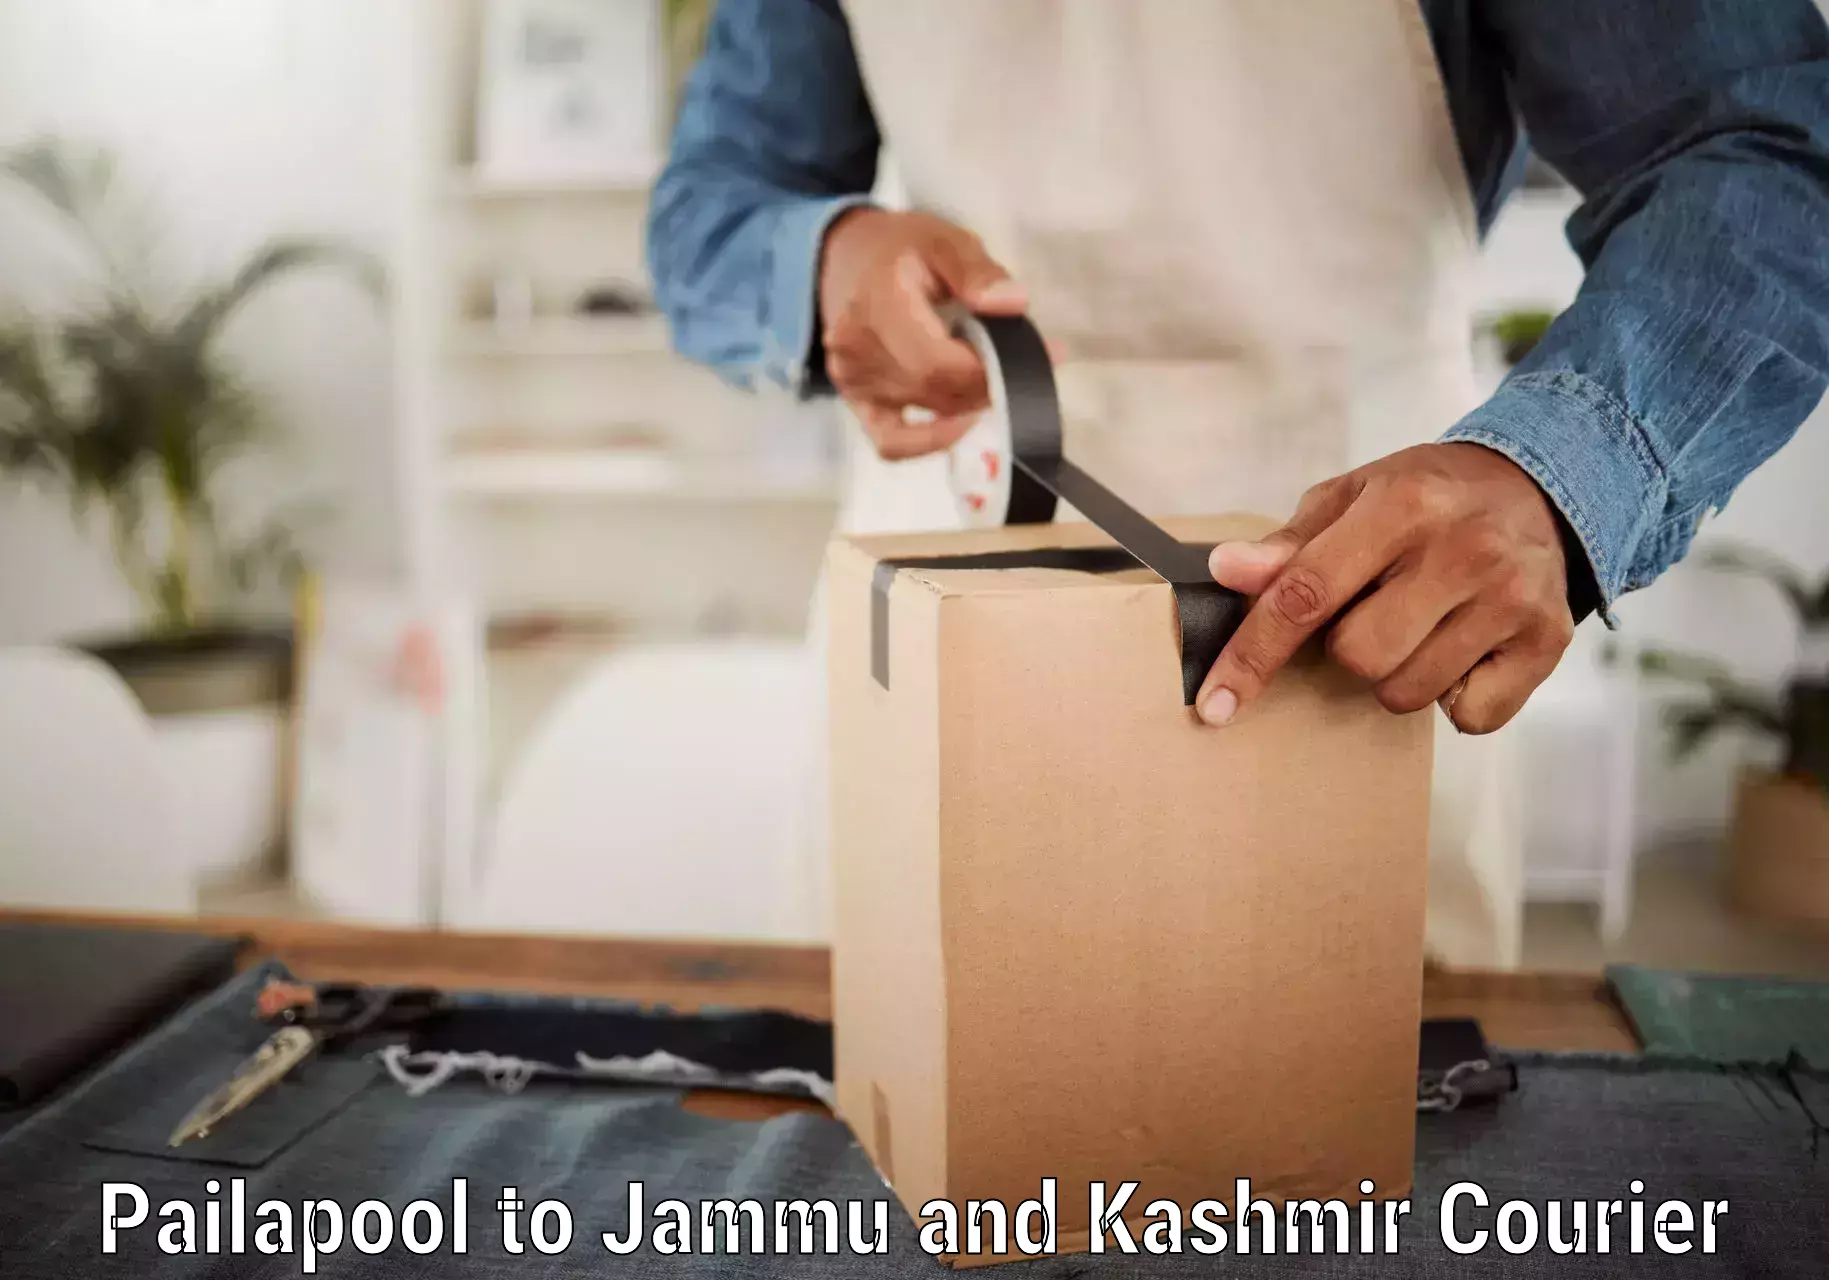 Reliable courier service Pailapool to Srinagar Kashmir